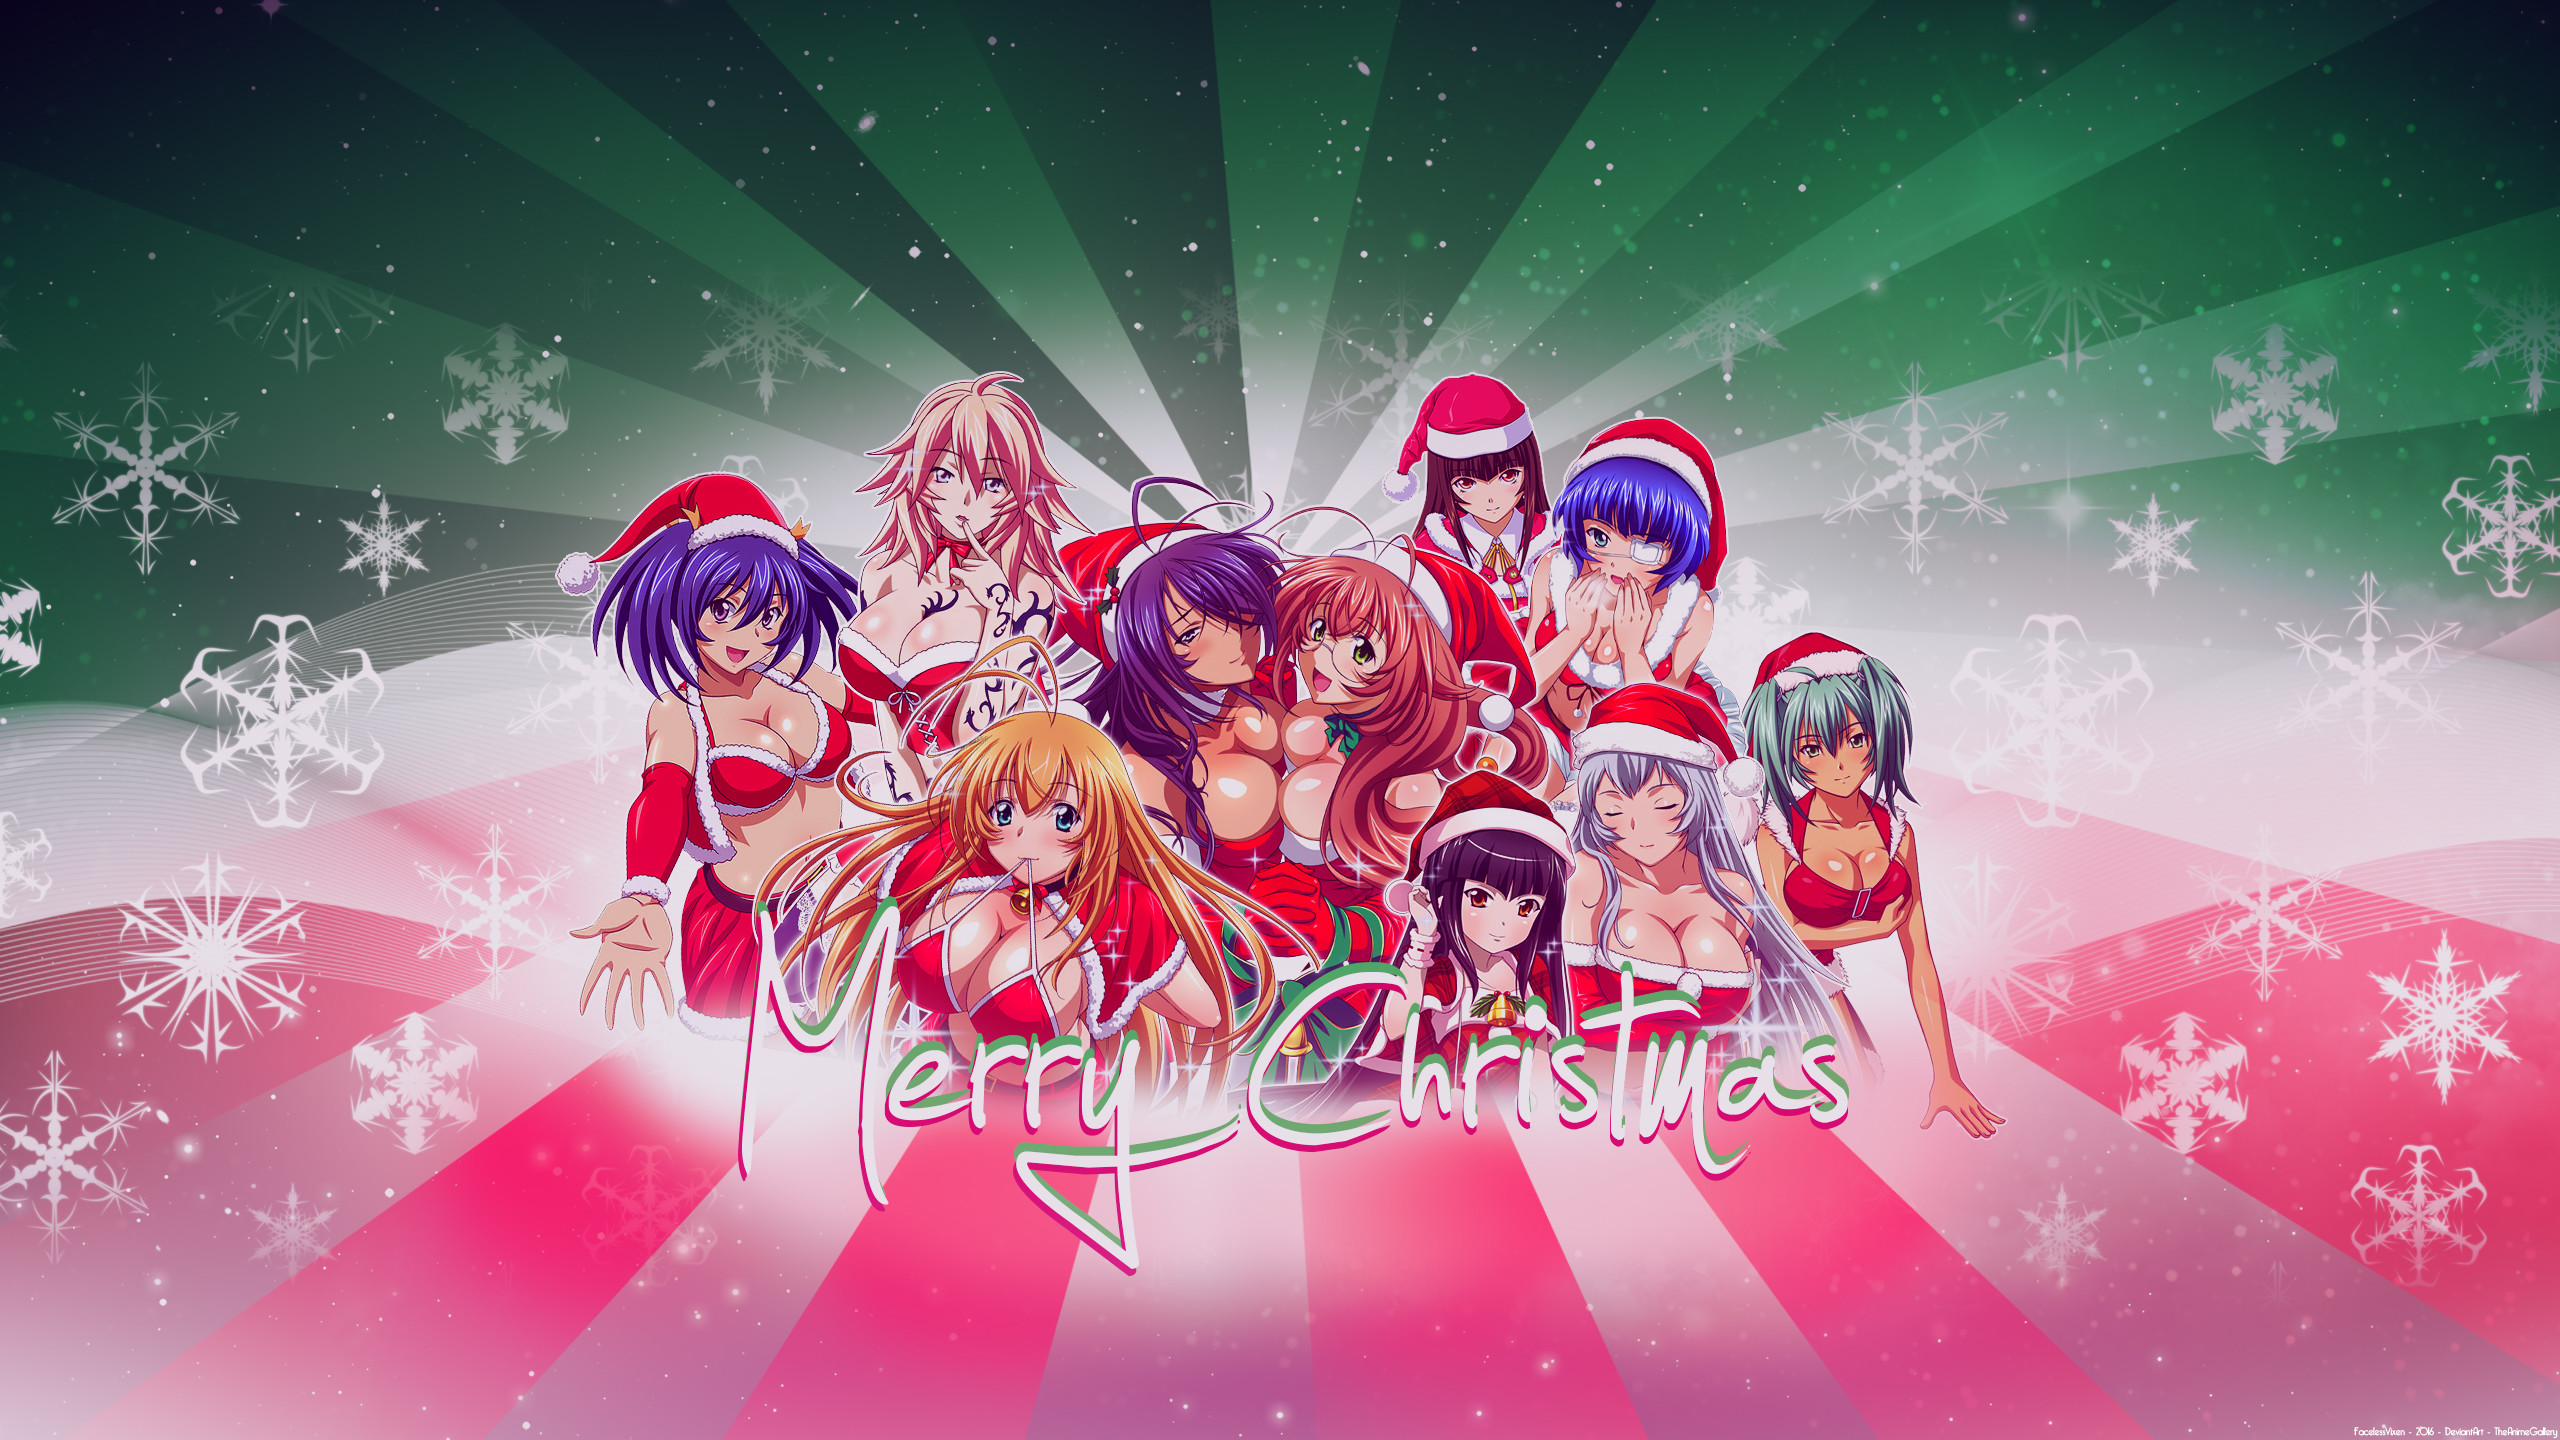 Celebrations / Christmas / Anime girls Wallpaper